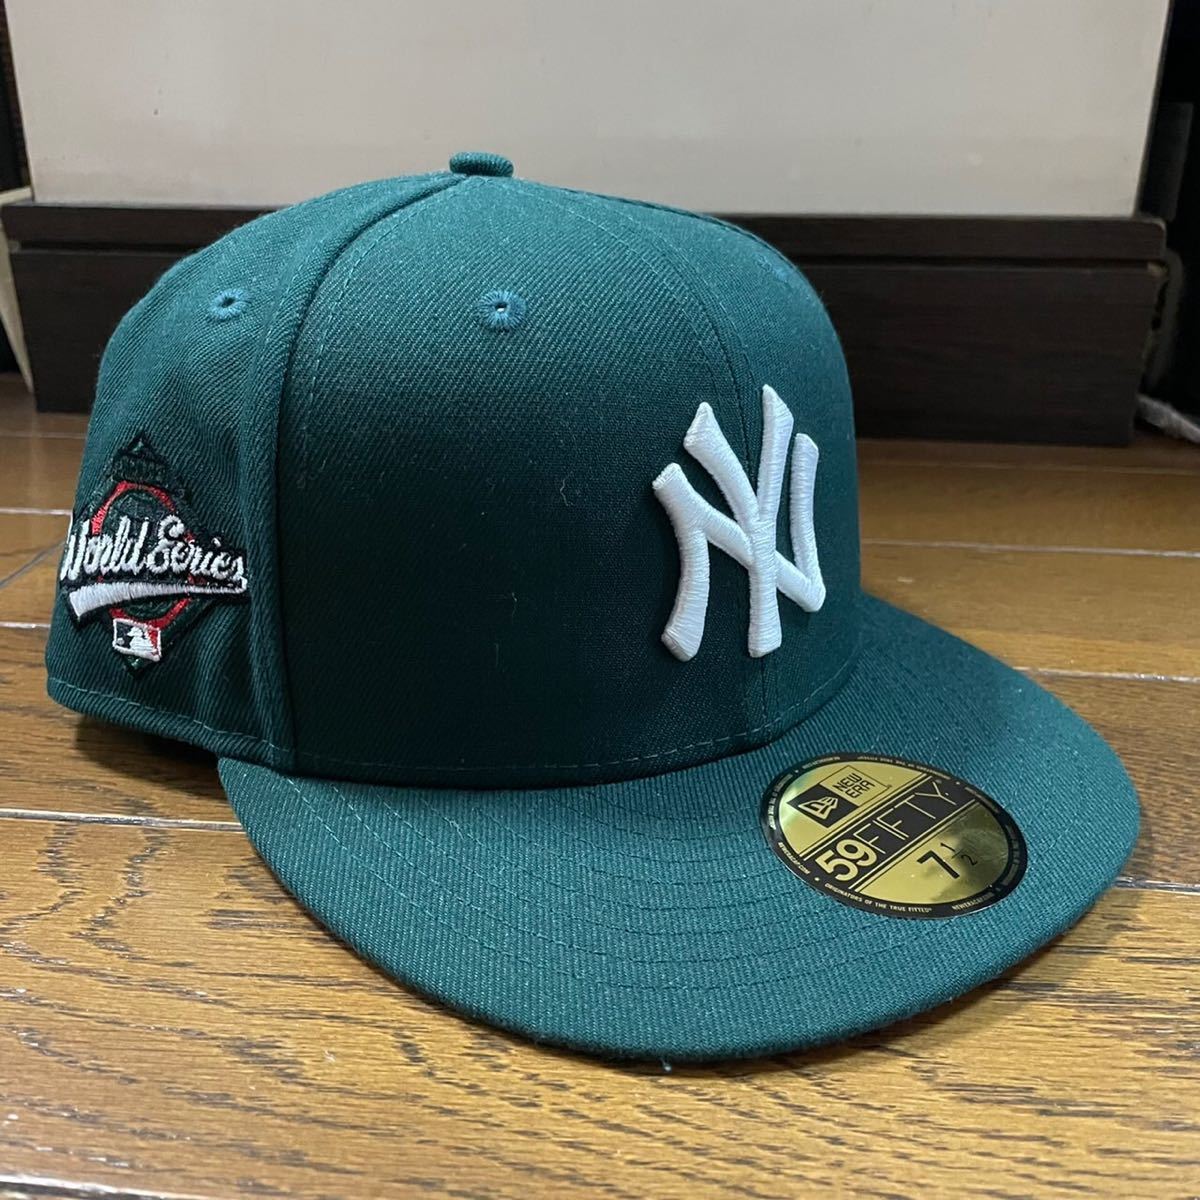 新品 supreme new era Yankees ヤンキース 黒 7 1/2 - rehda.com